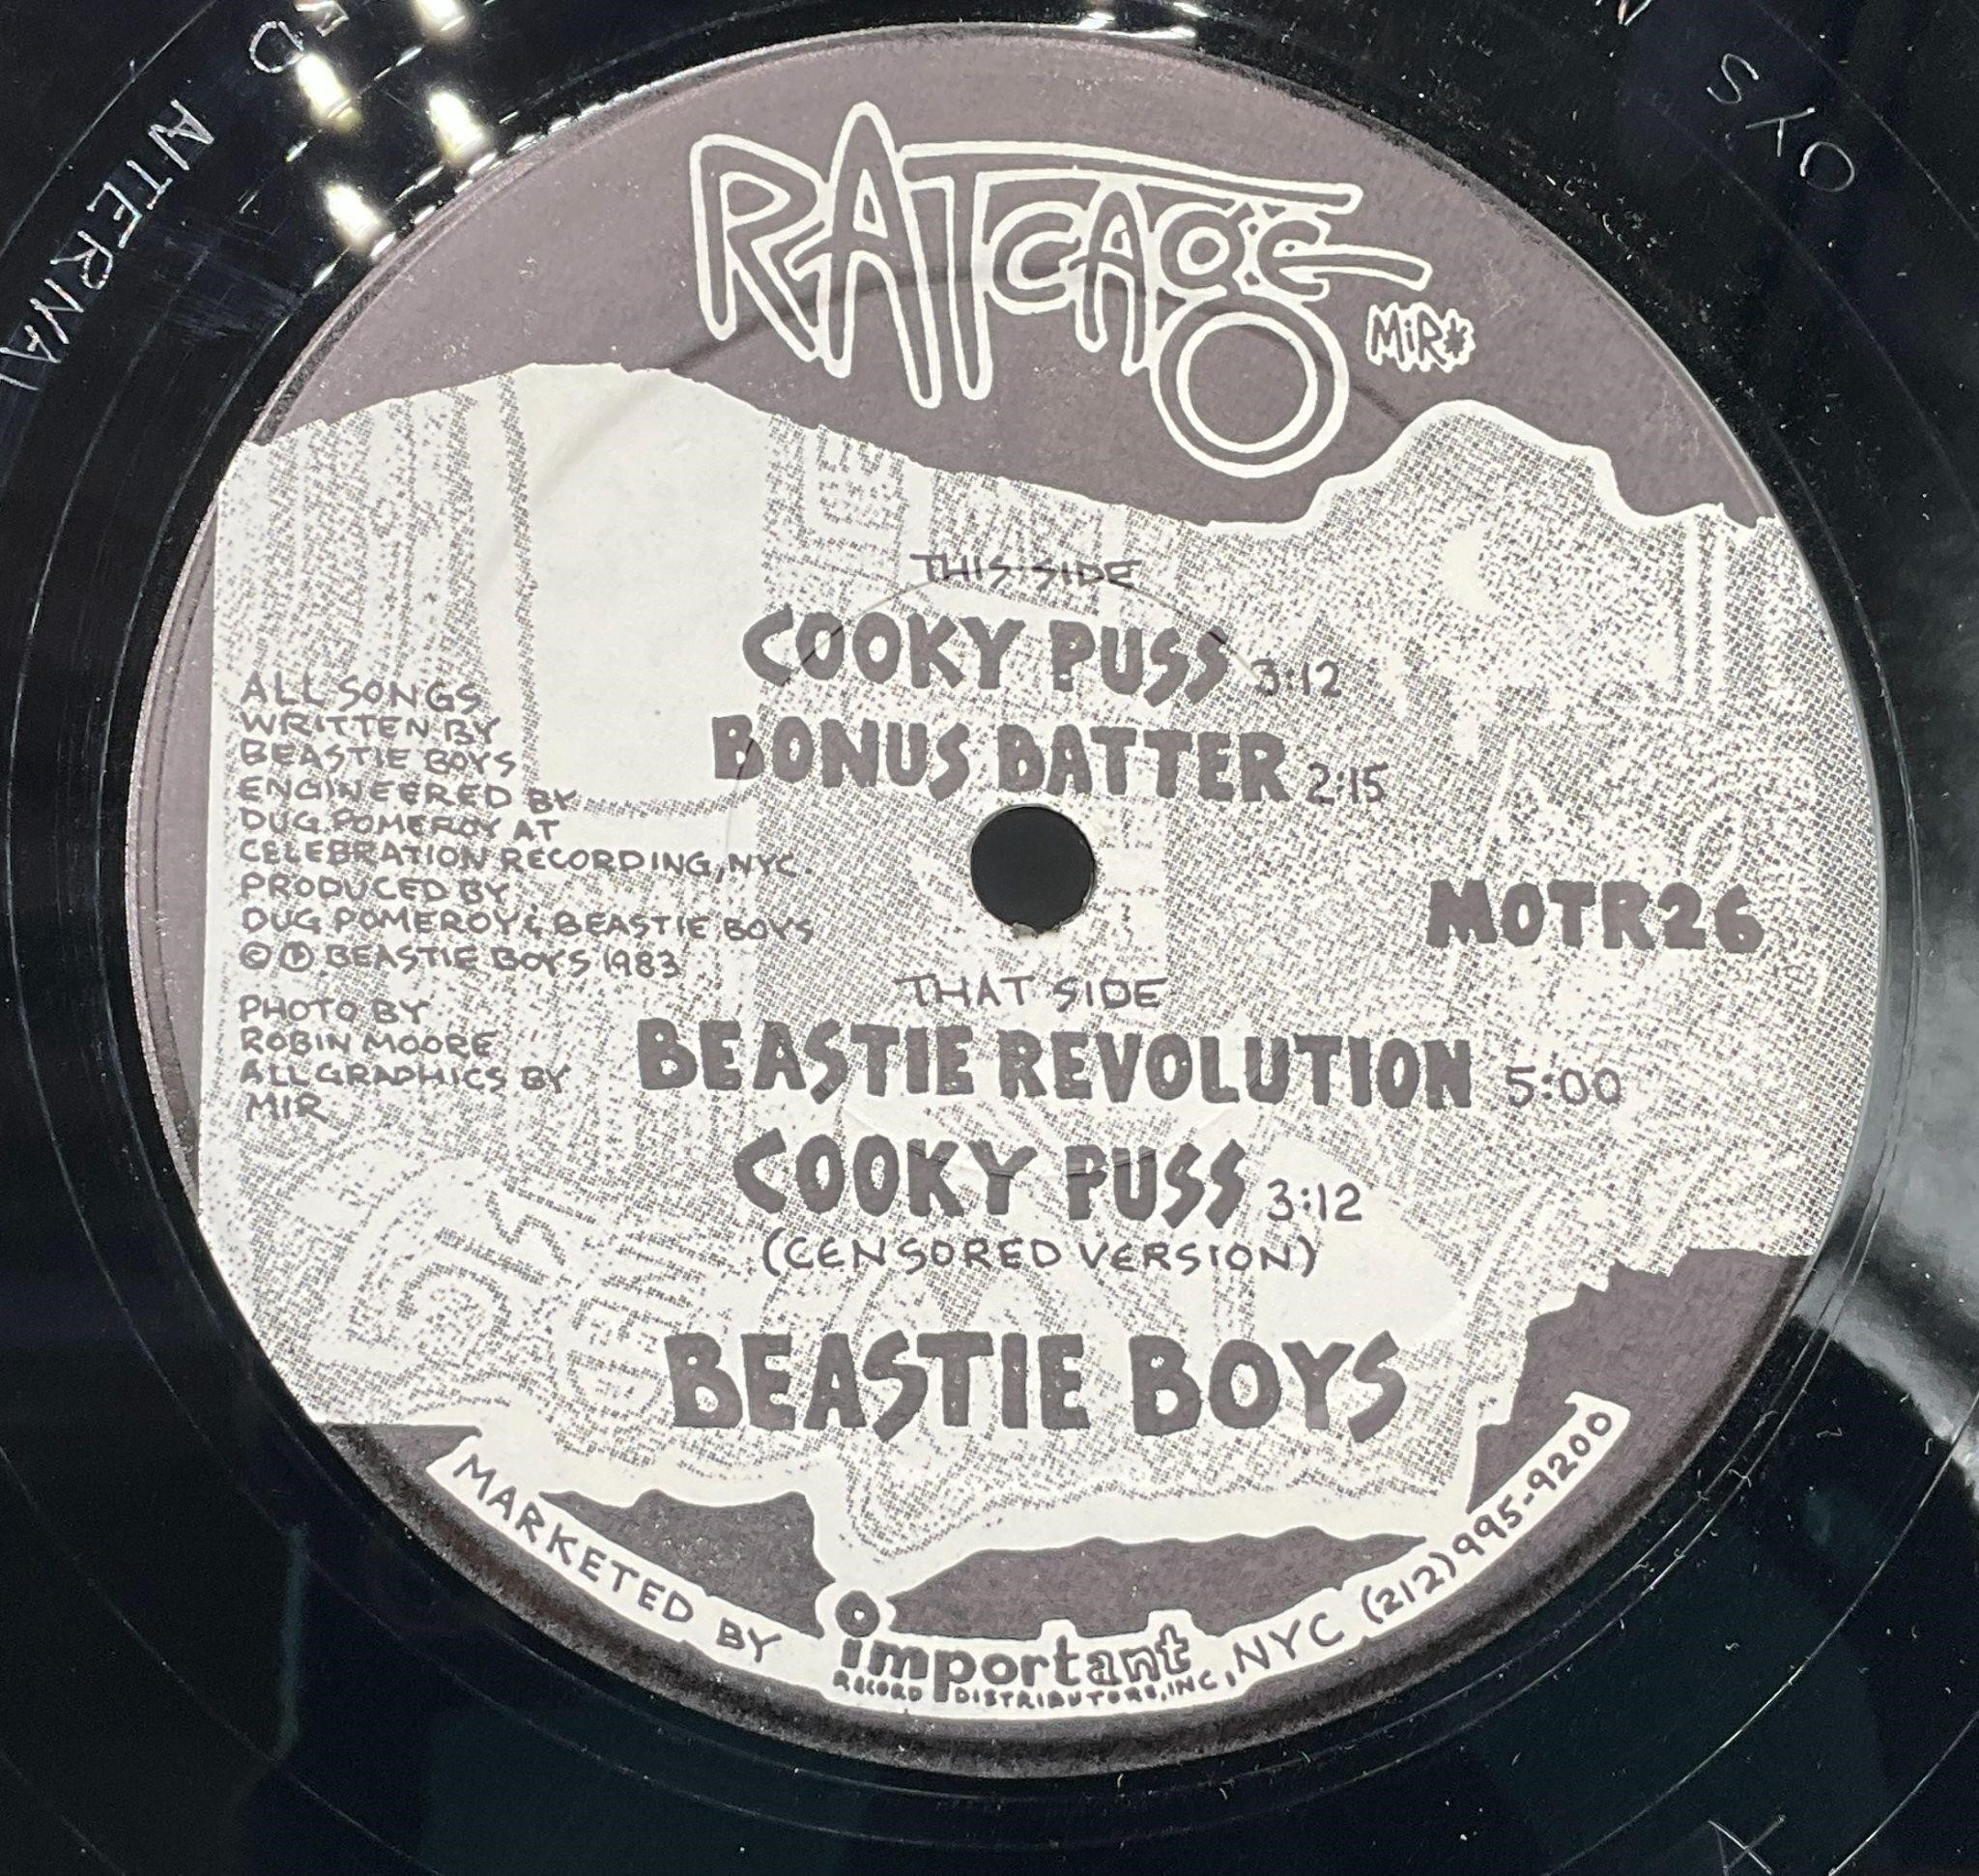 1983 OG Beastie Boys "Cooky Puss" 12" Vinyl Single